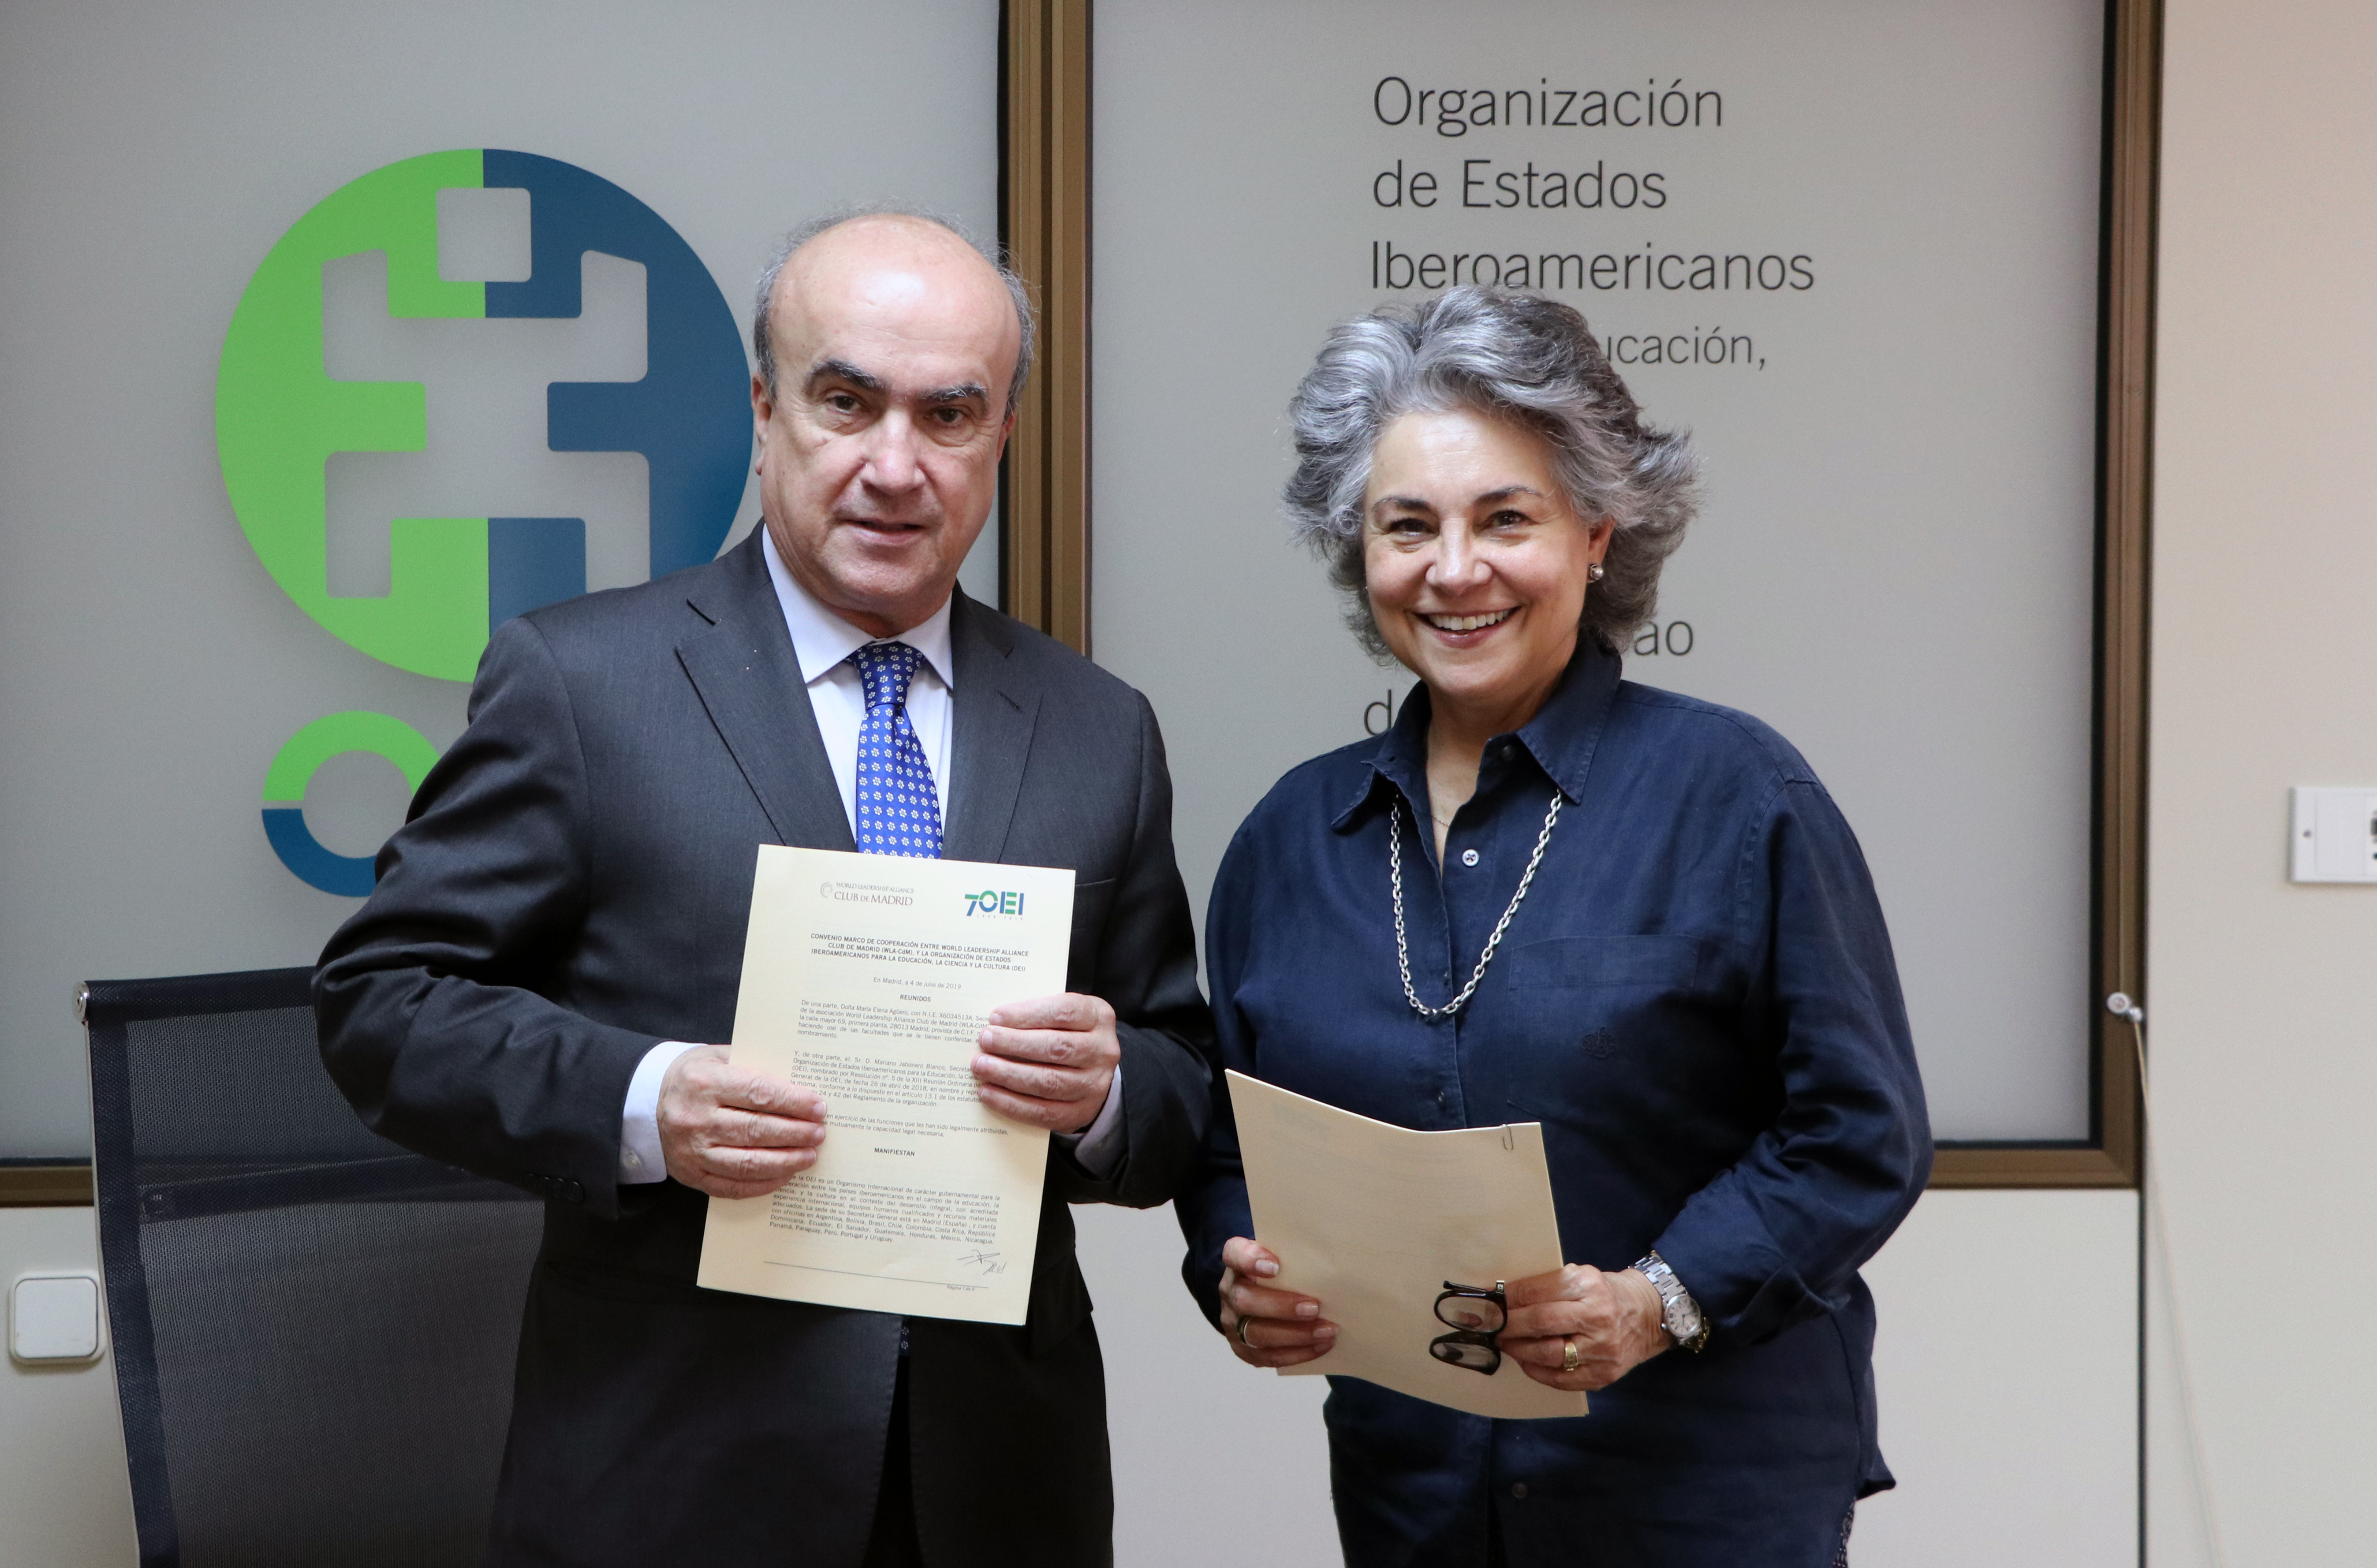 La OEI participarà en el Diálogo de Políticas de Madrid 2019